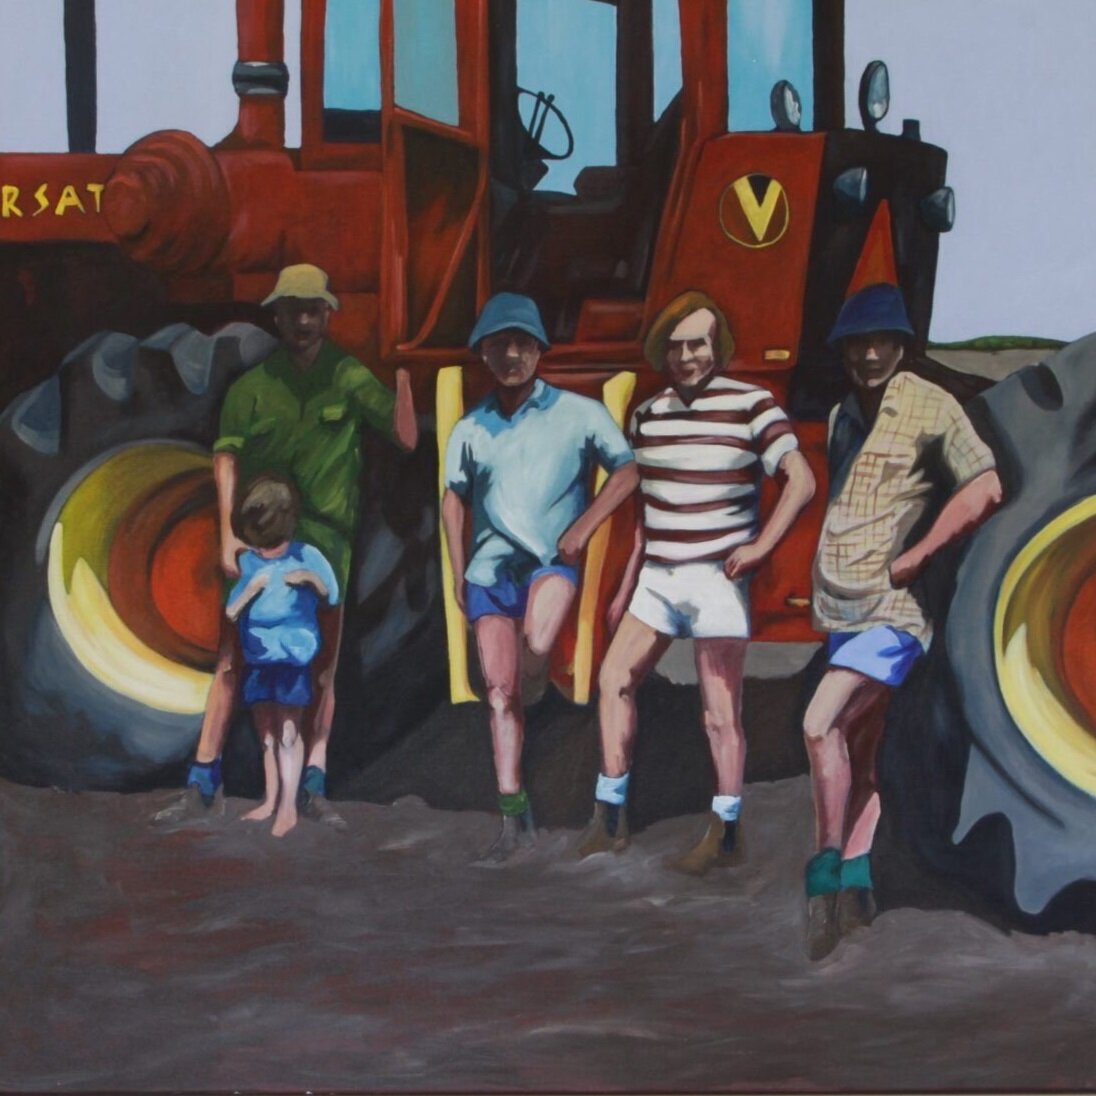   Brothers on farms.  Acrylic on canvas, 110 x 110cm. 